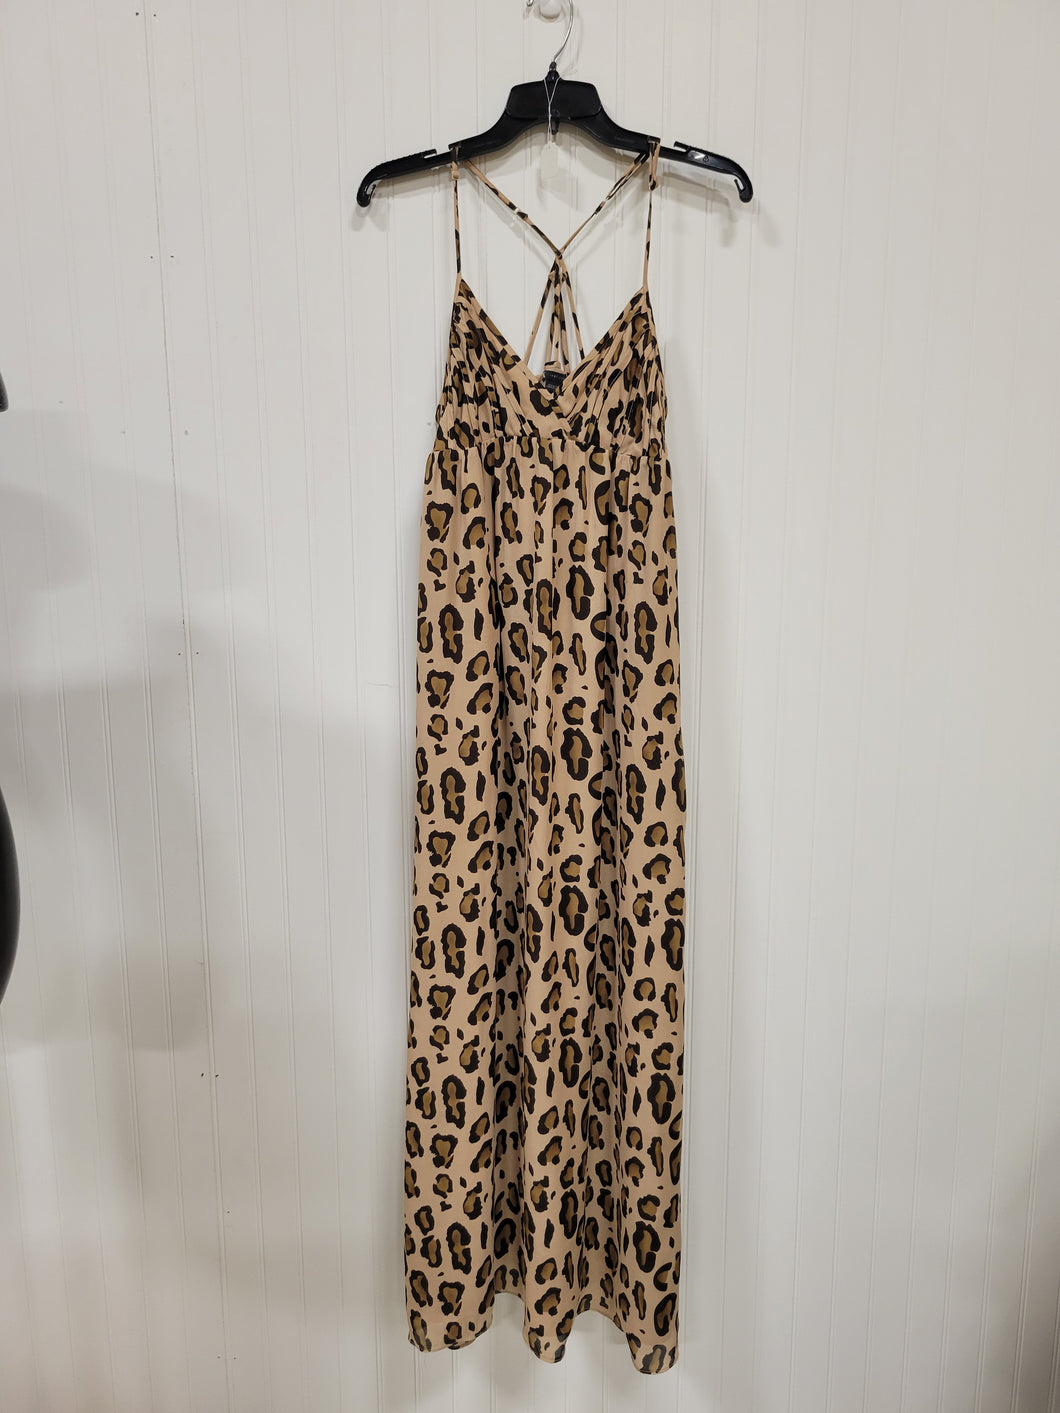 Armani Exchange Dress